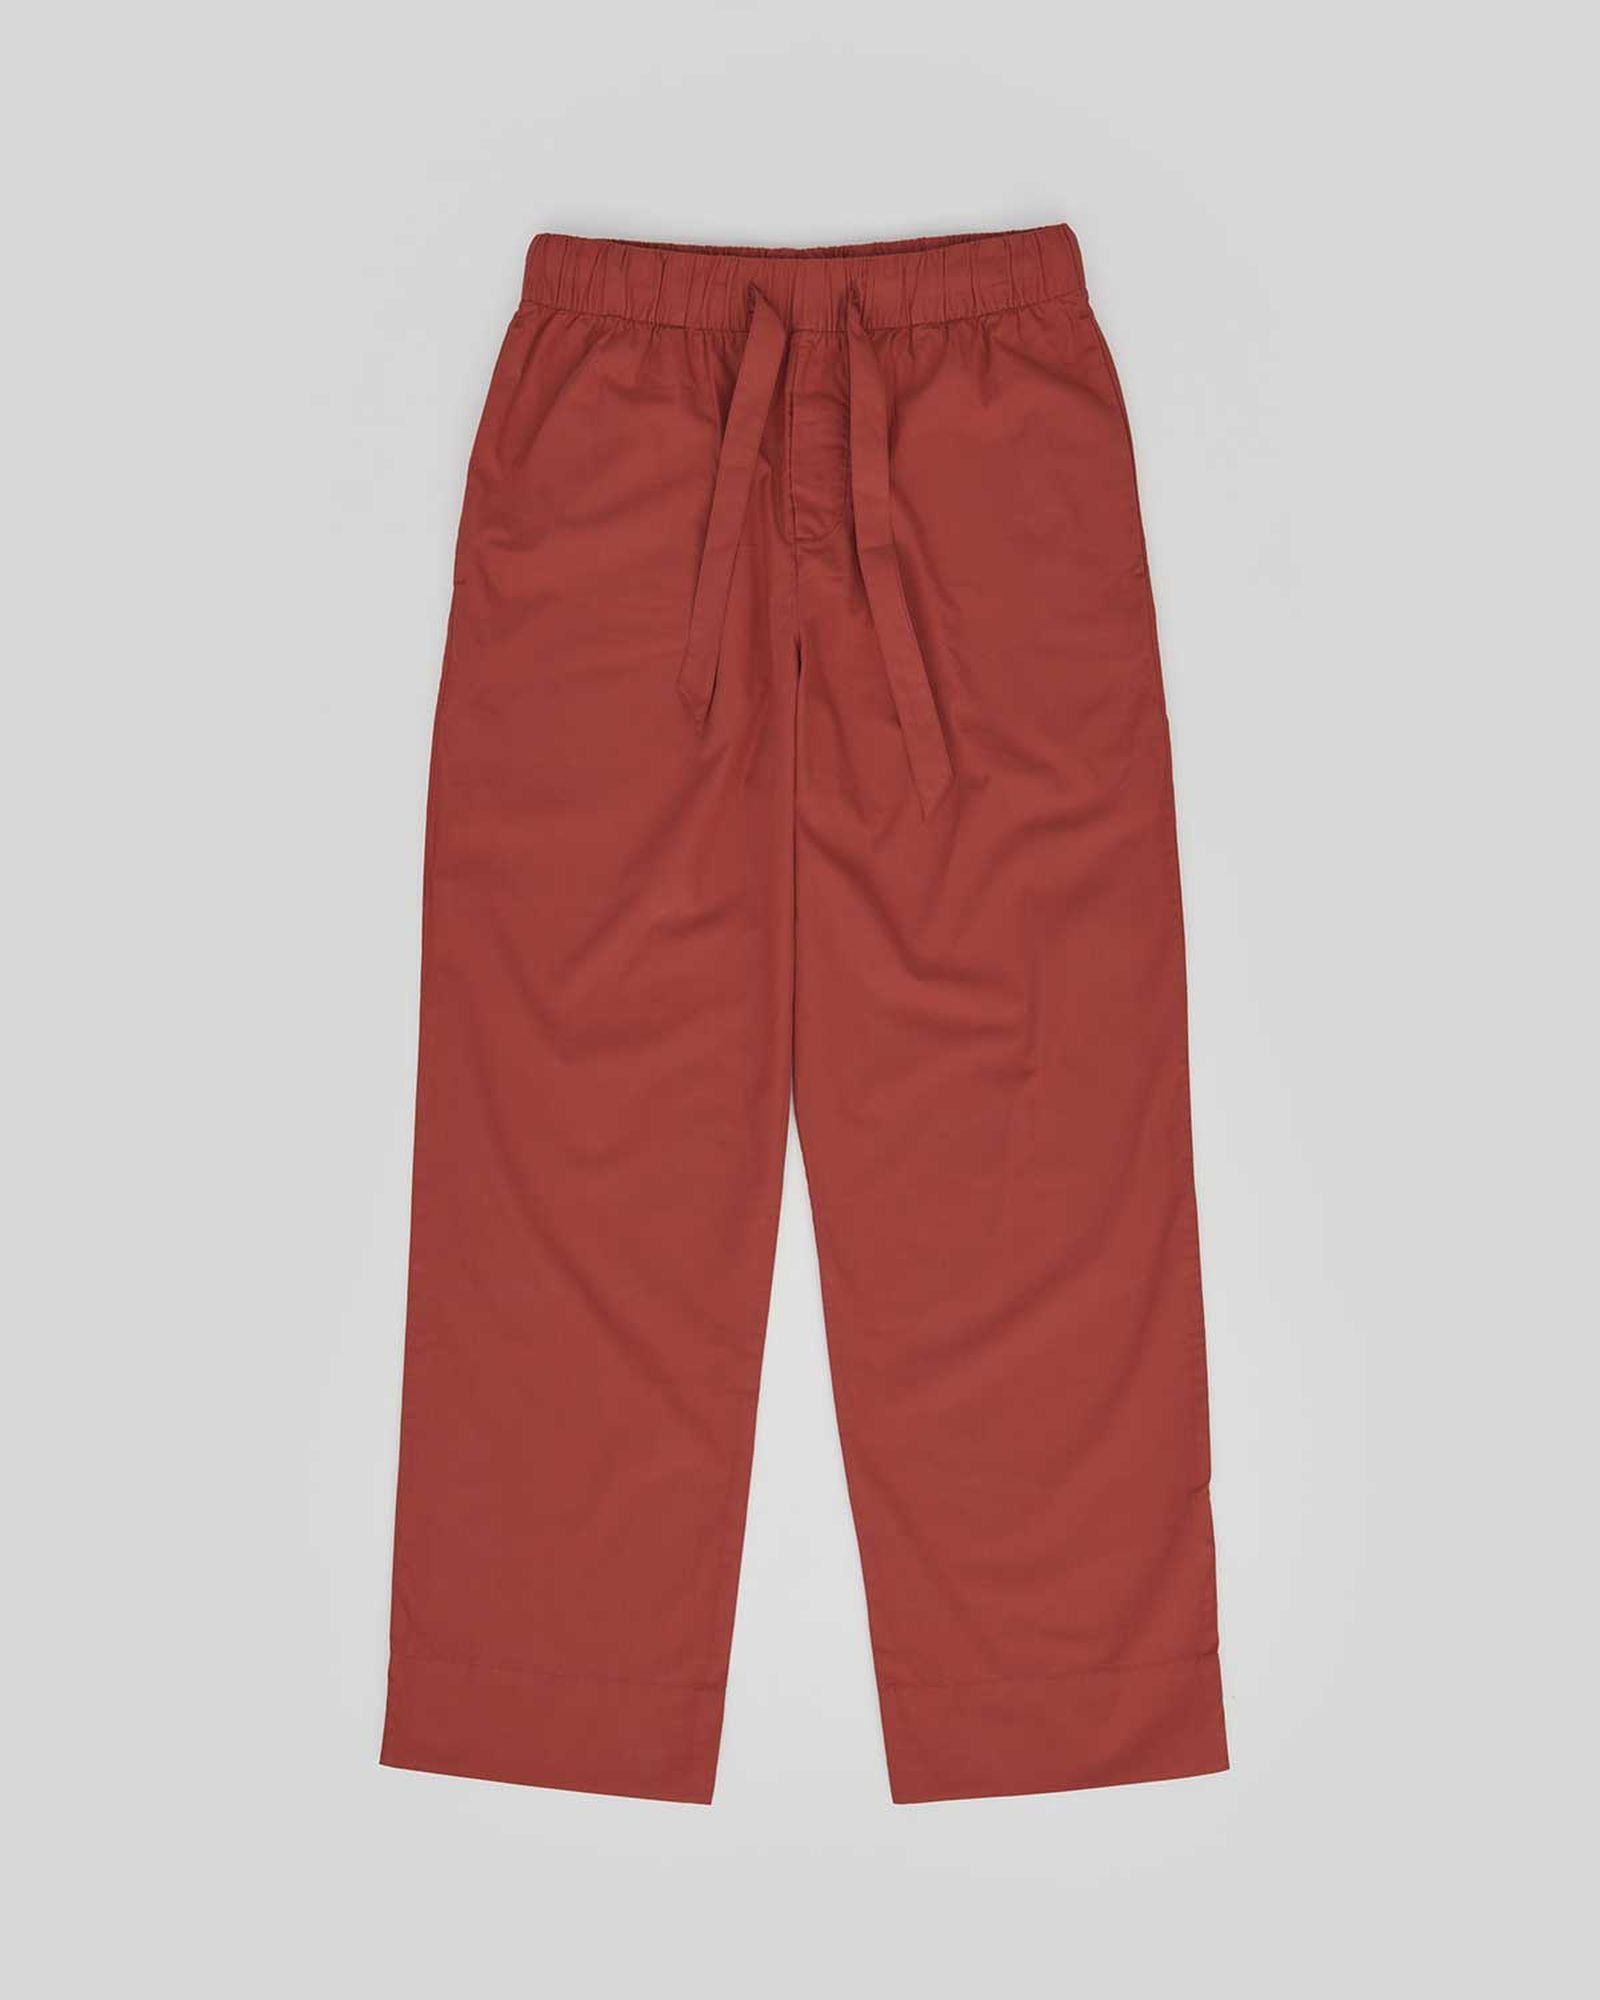 Red Farfetch Clothing Loungewear Pajamas Drawstring pyjama shorts 